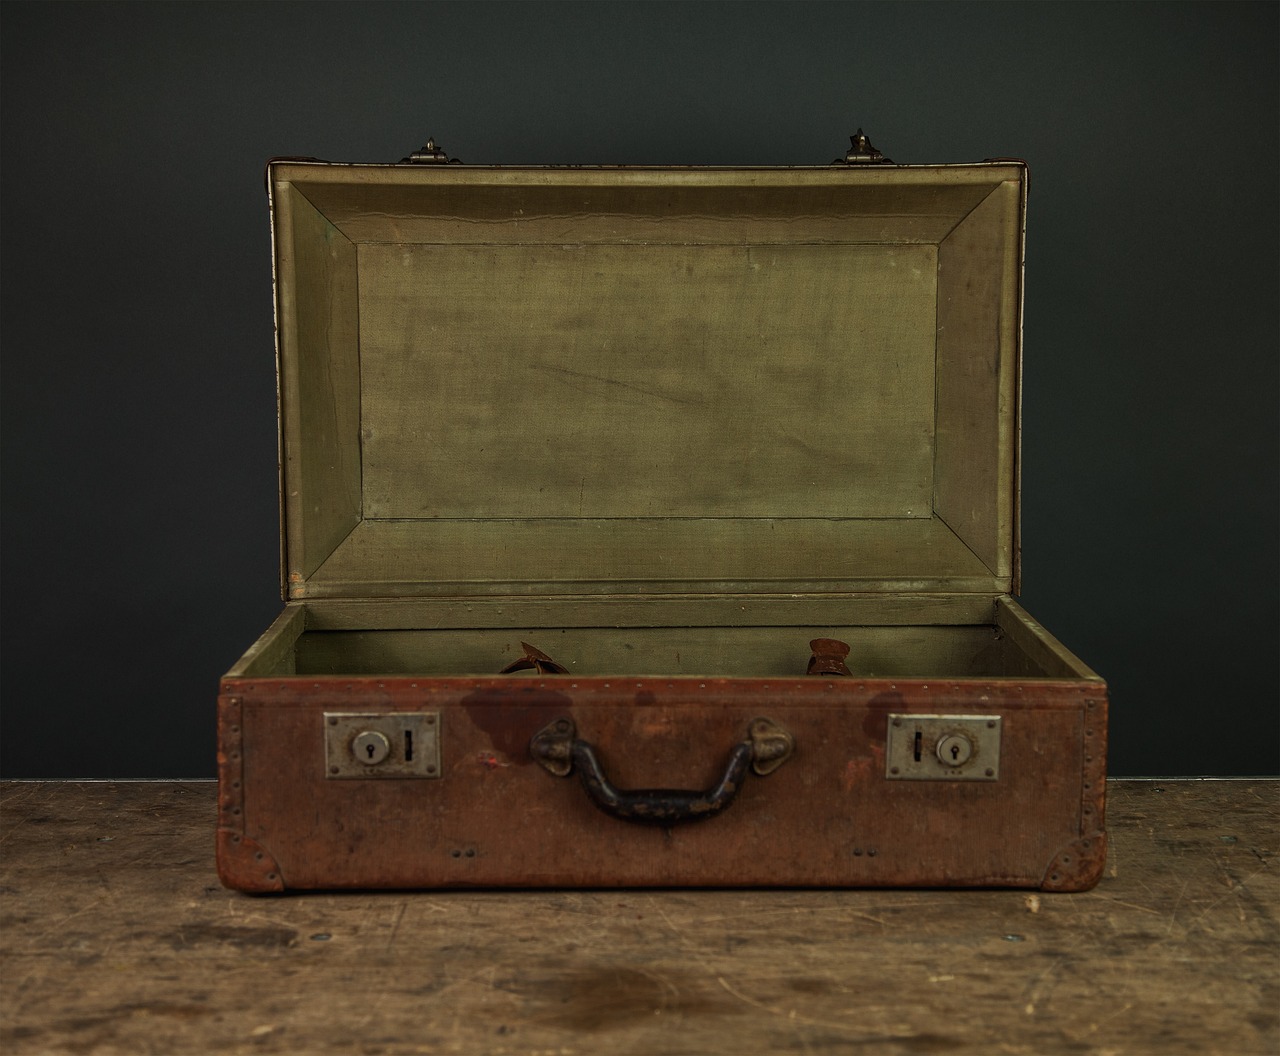 Un maletín abierto | Fuente: Pixabay